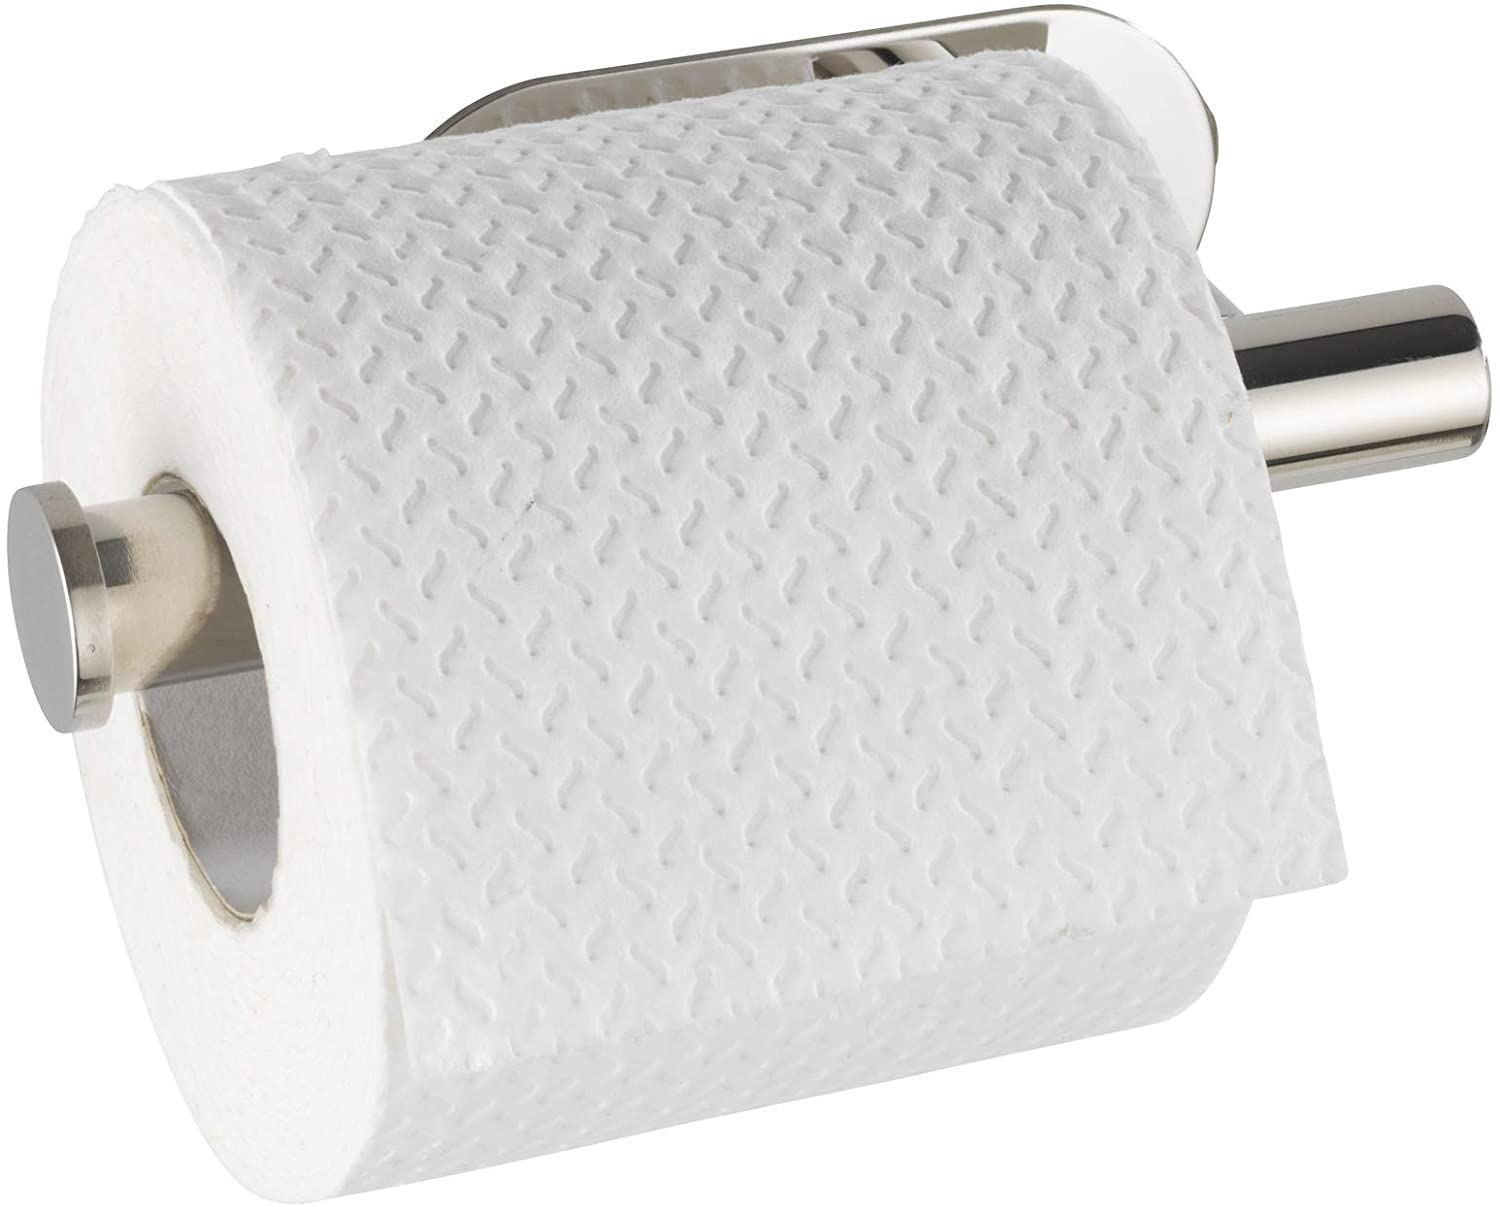 Turbo-Loc® Edelstahl Toilettenpapierhalter Orea Shine - WC-Rollenhalter, Befestigen ohne bohren, Edelstahl rostfrei, 16 x 4 x 7 cm, Glänzend